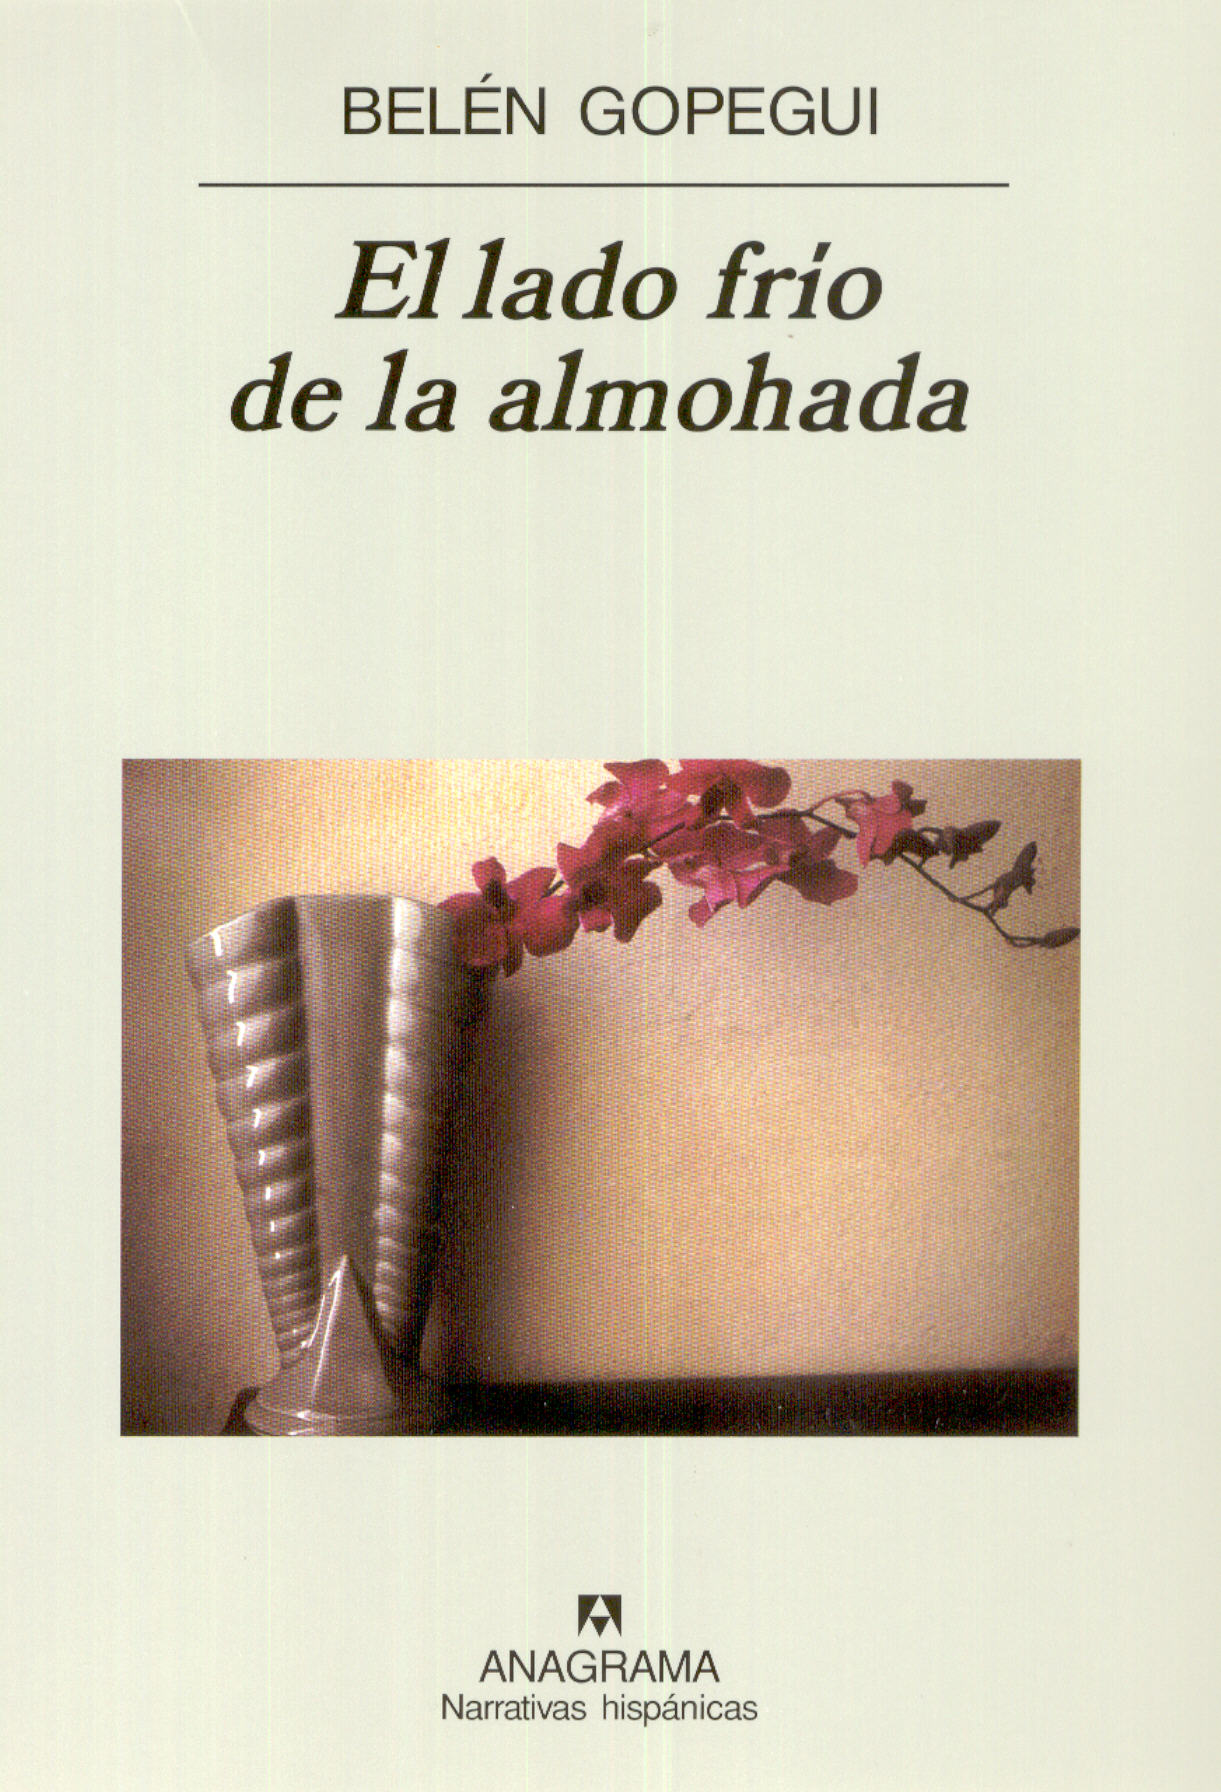 Escrutinio Desconocido Encarnar El lado frío de la almohada - Ruiz de Gopegui, Belén - 978-84-339-6865-4 -  Editorial Anagrama